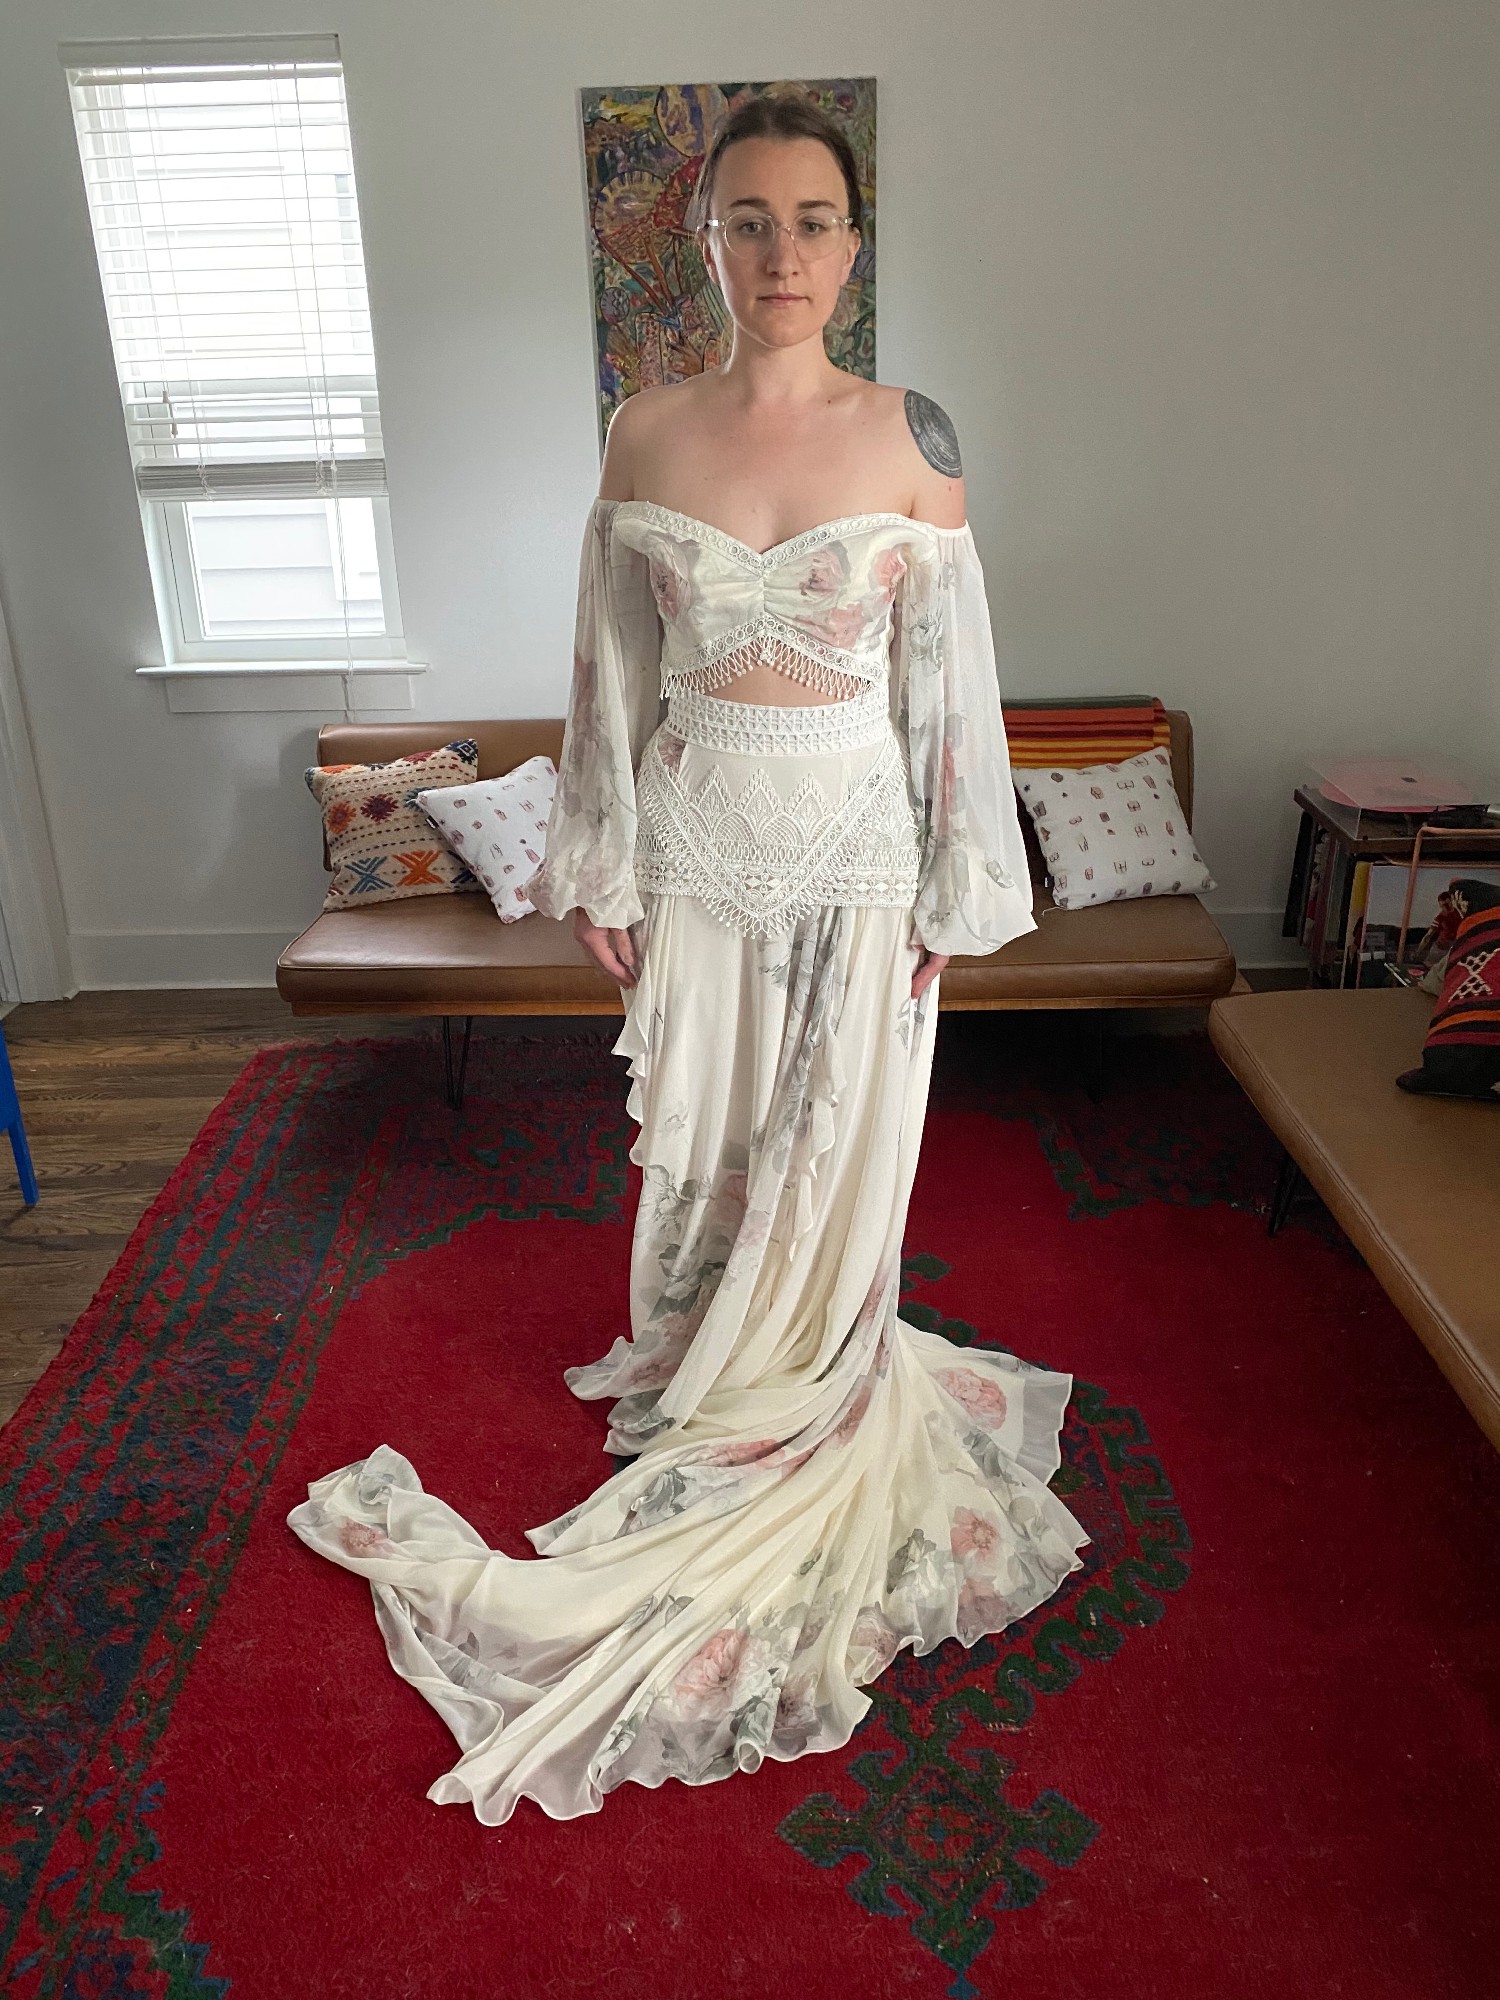 Save Rue - Wedding 78% Dress De New Seine Nahla Stillwhite